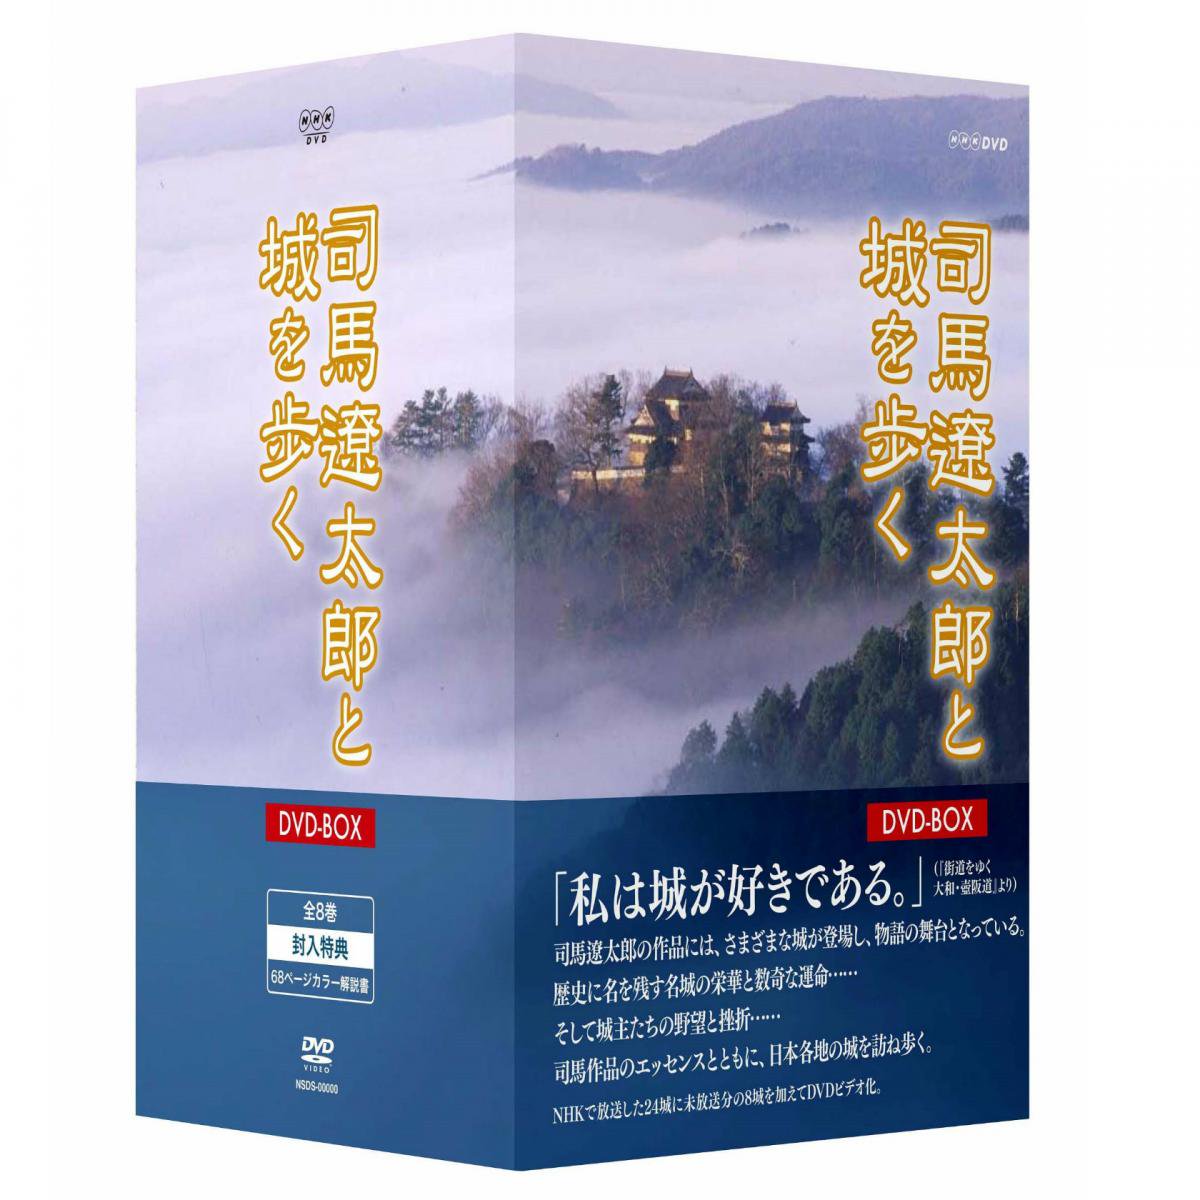 司馬遼太郎と城を歩く DVD-BOX - 歴史プラス(時空旅人公式通販サイト)